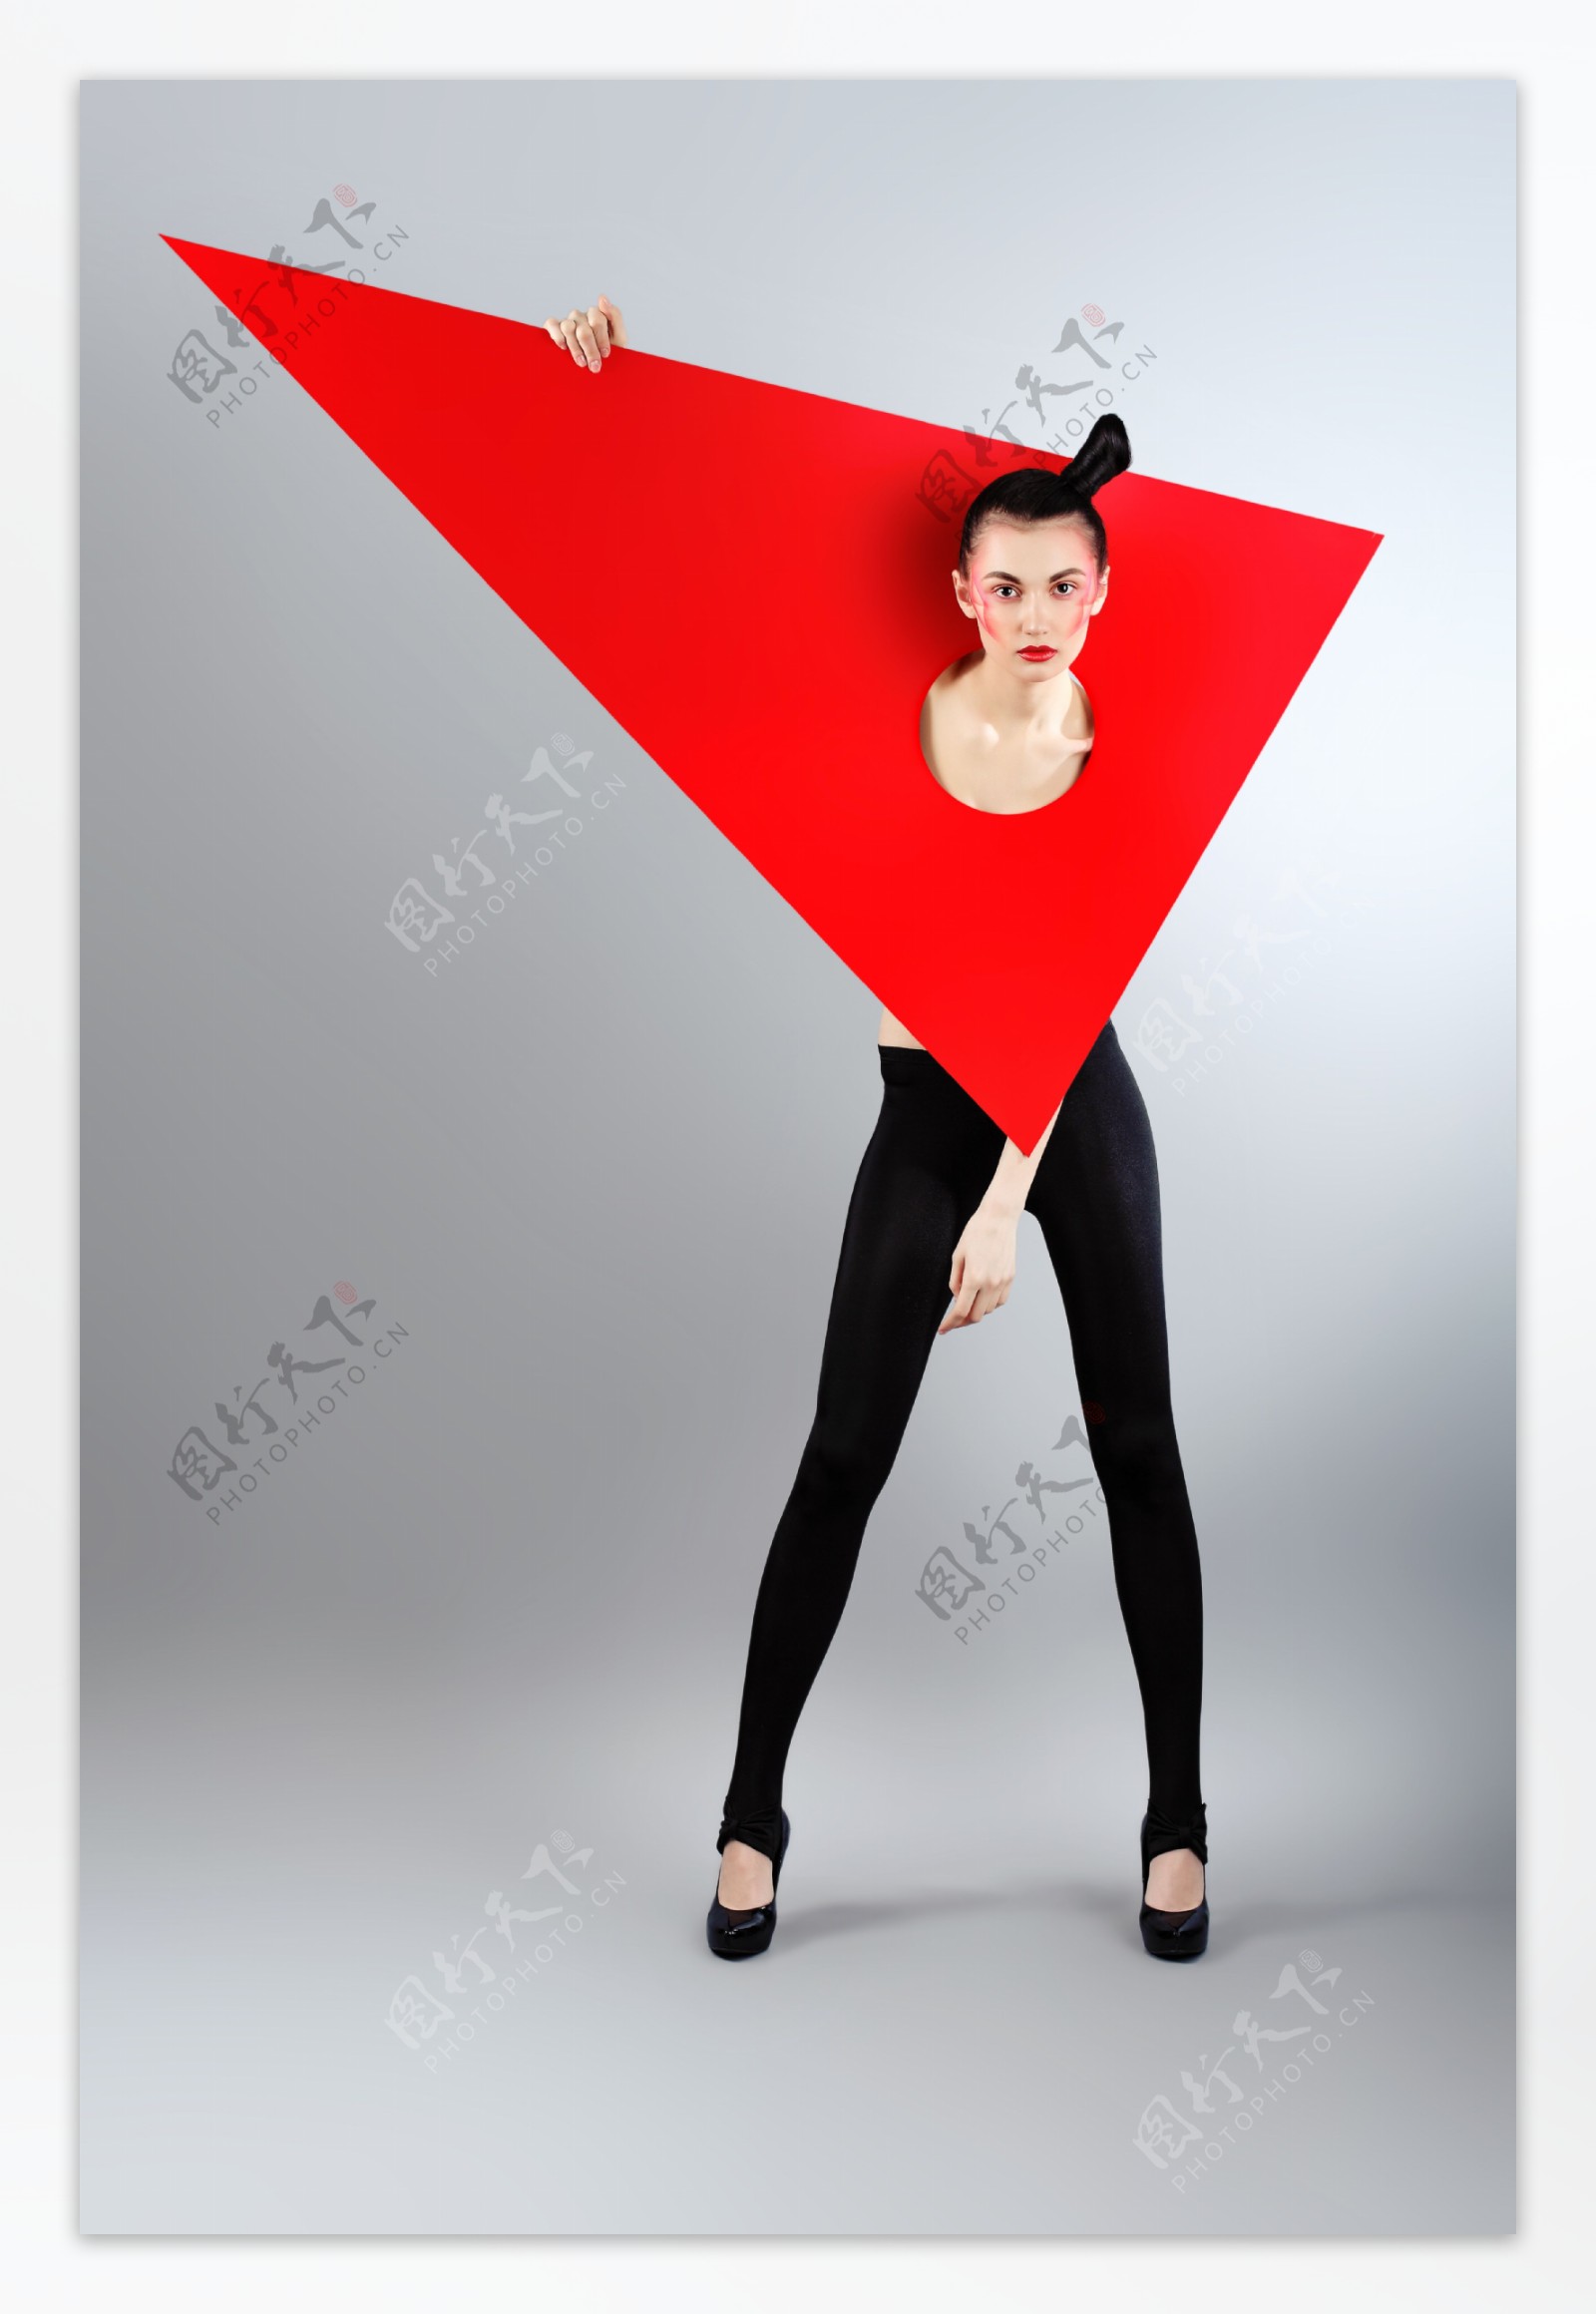 三角形纸卡与性感美女图片